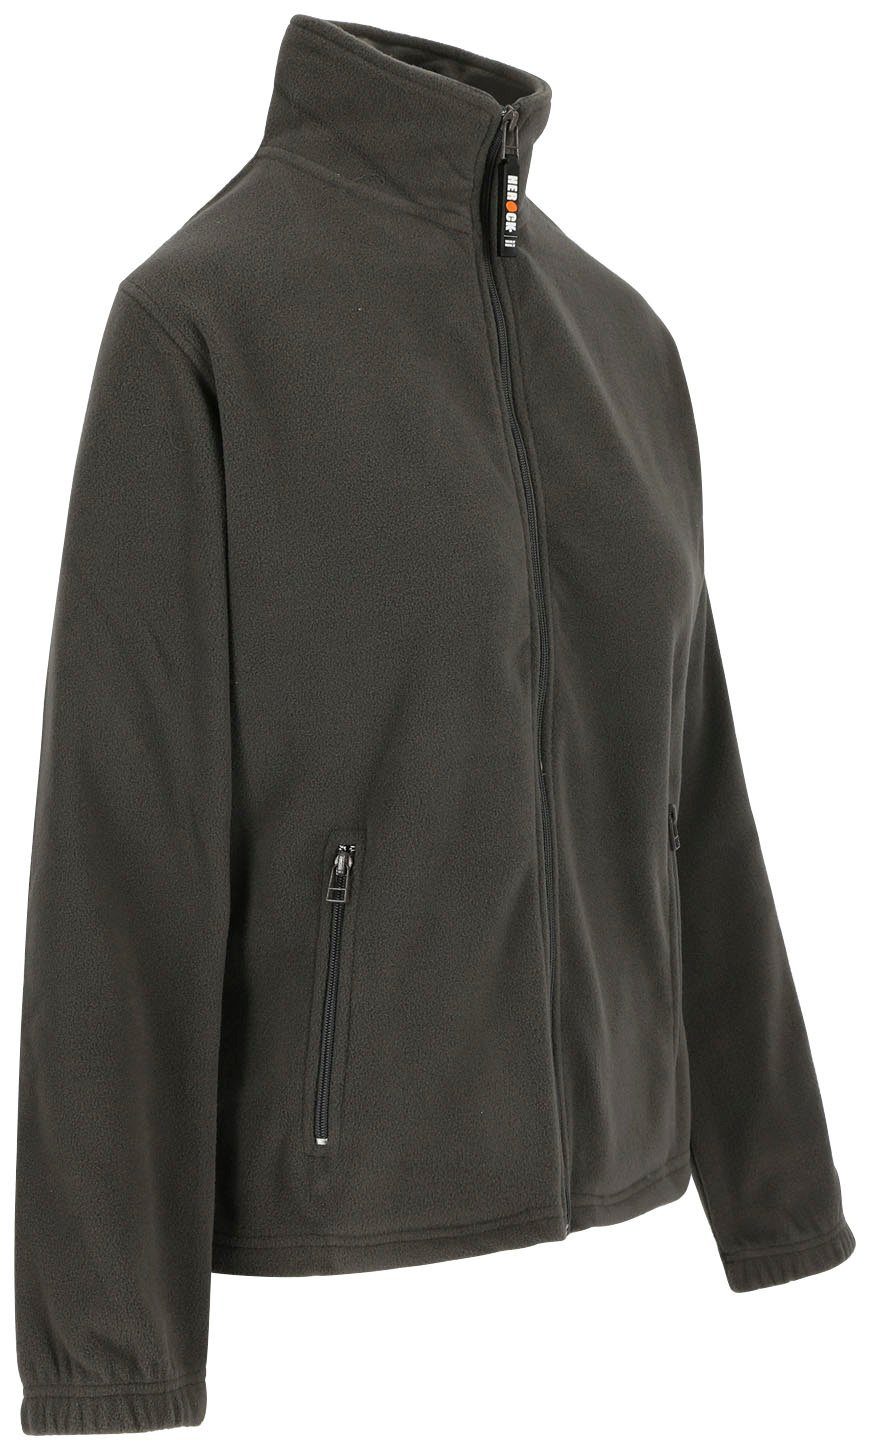 Herock Fleecejacke leicht Damen grau warm, Reißverschluss, Deva Jacke und Seitentaschen, 2 Fleece angenehm langem Mit